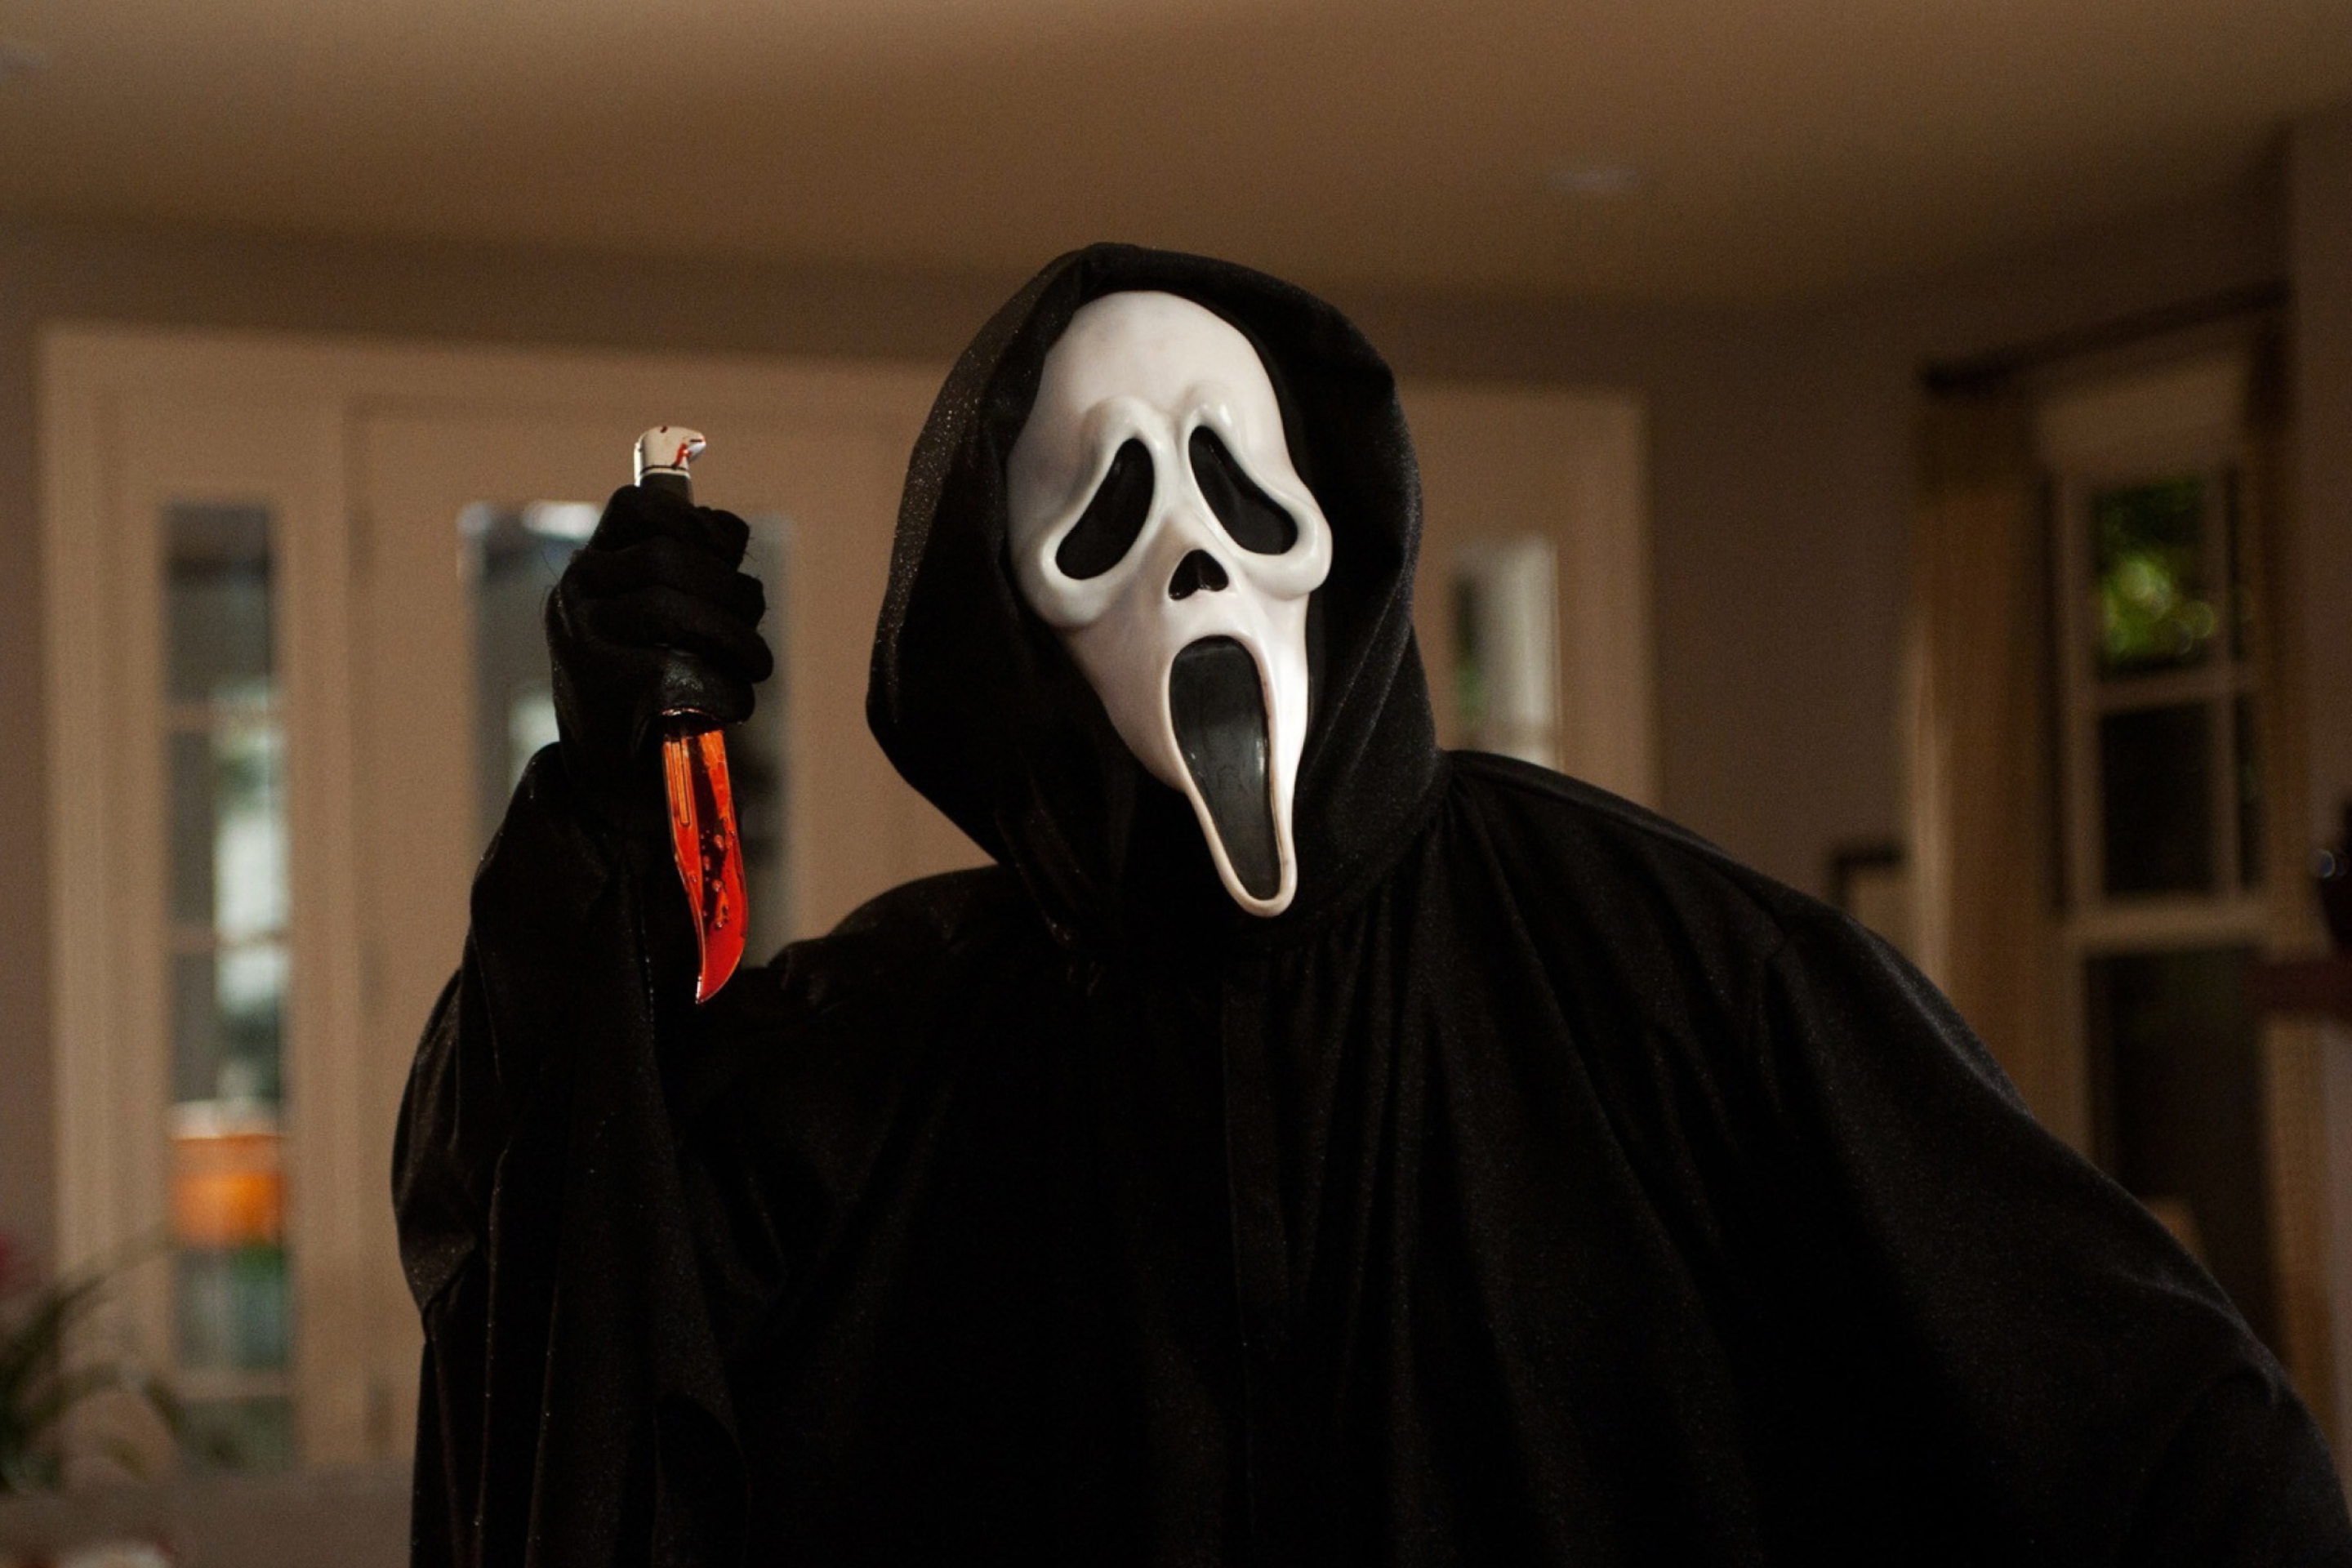 Sfondi Ghostface In Scream 2880x1920